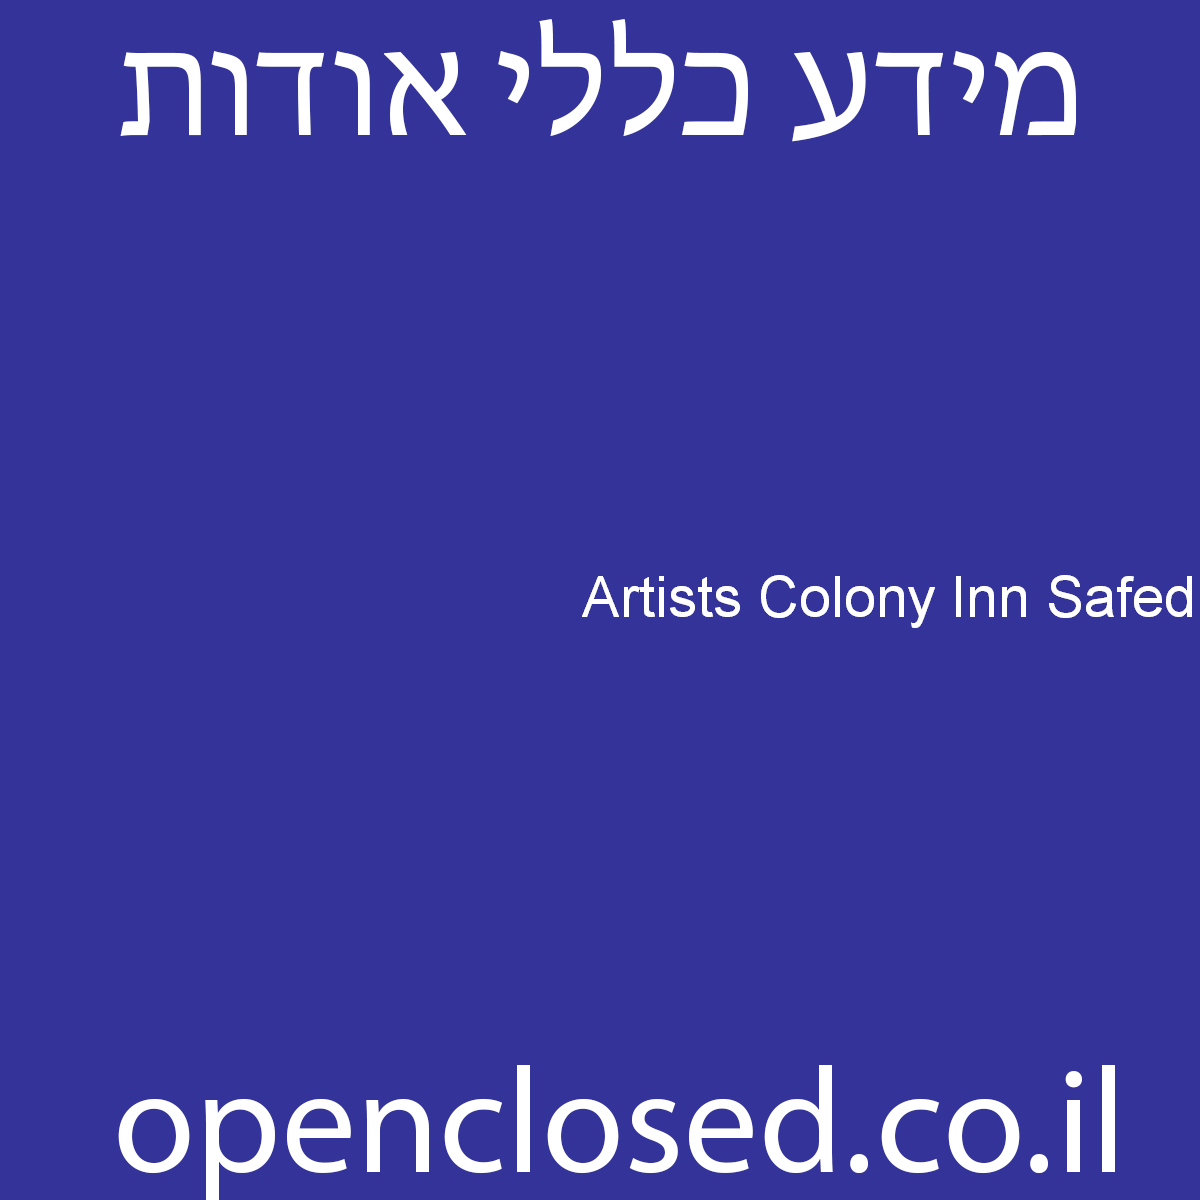 Artists Colony Inn Safed